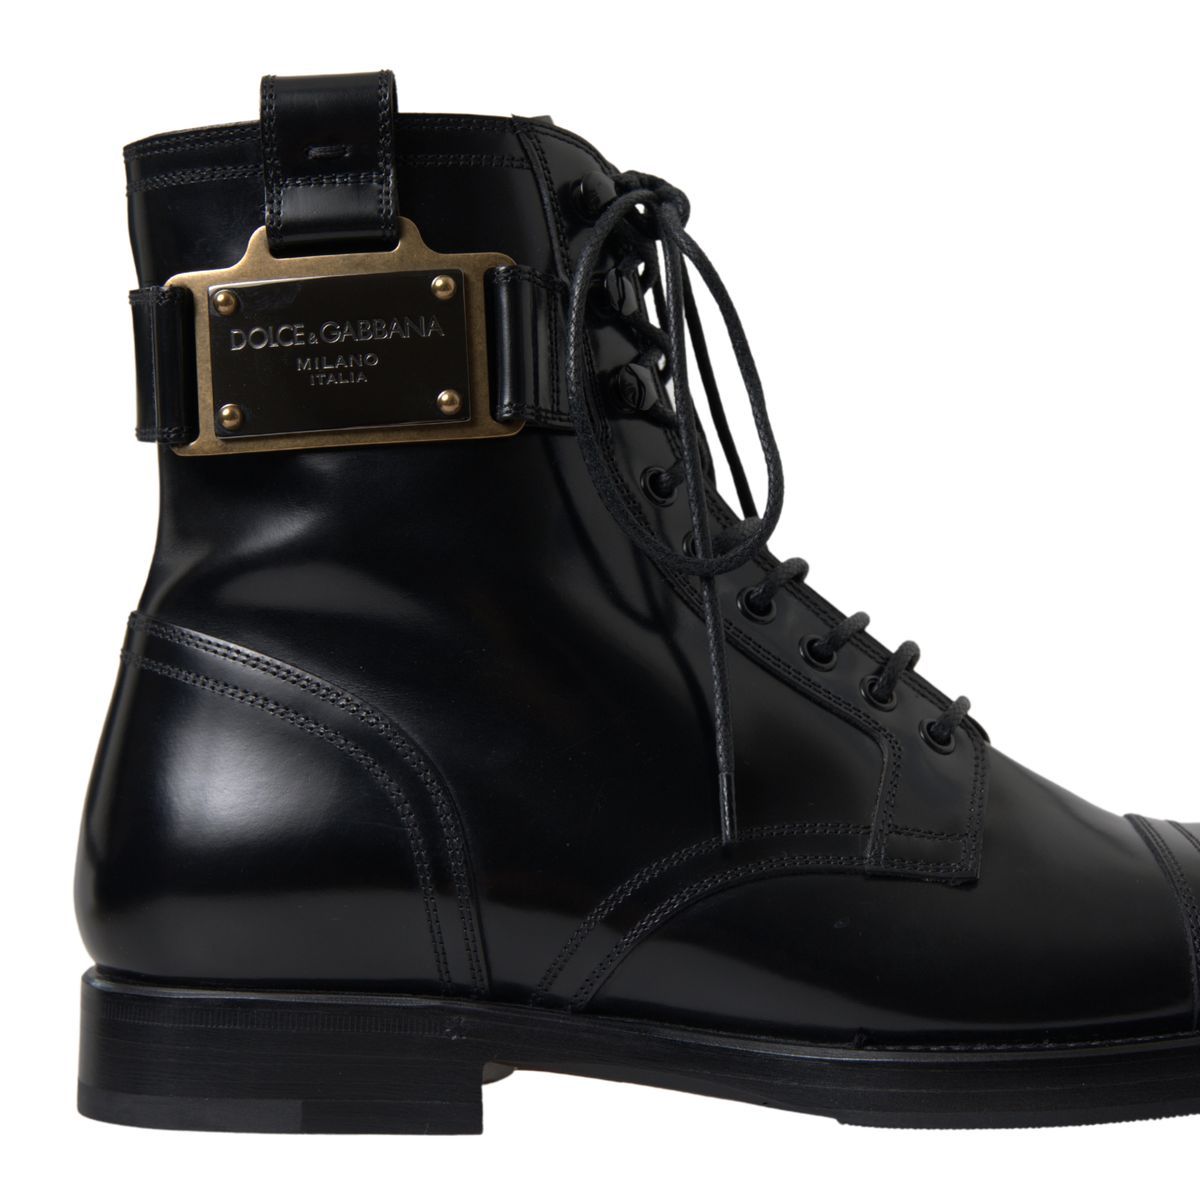 Elegant Black Leather Formal Boots